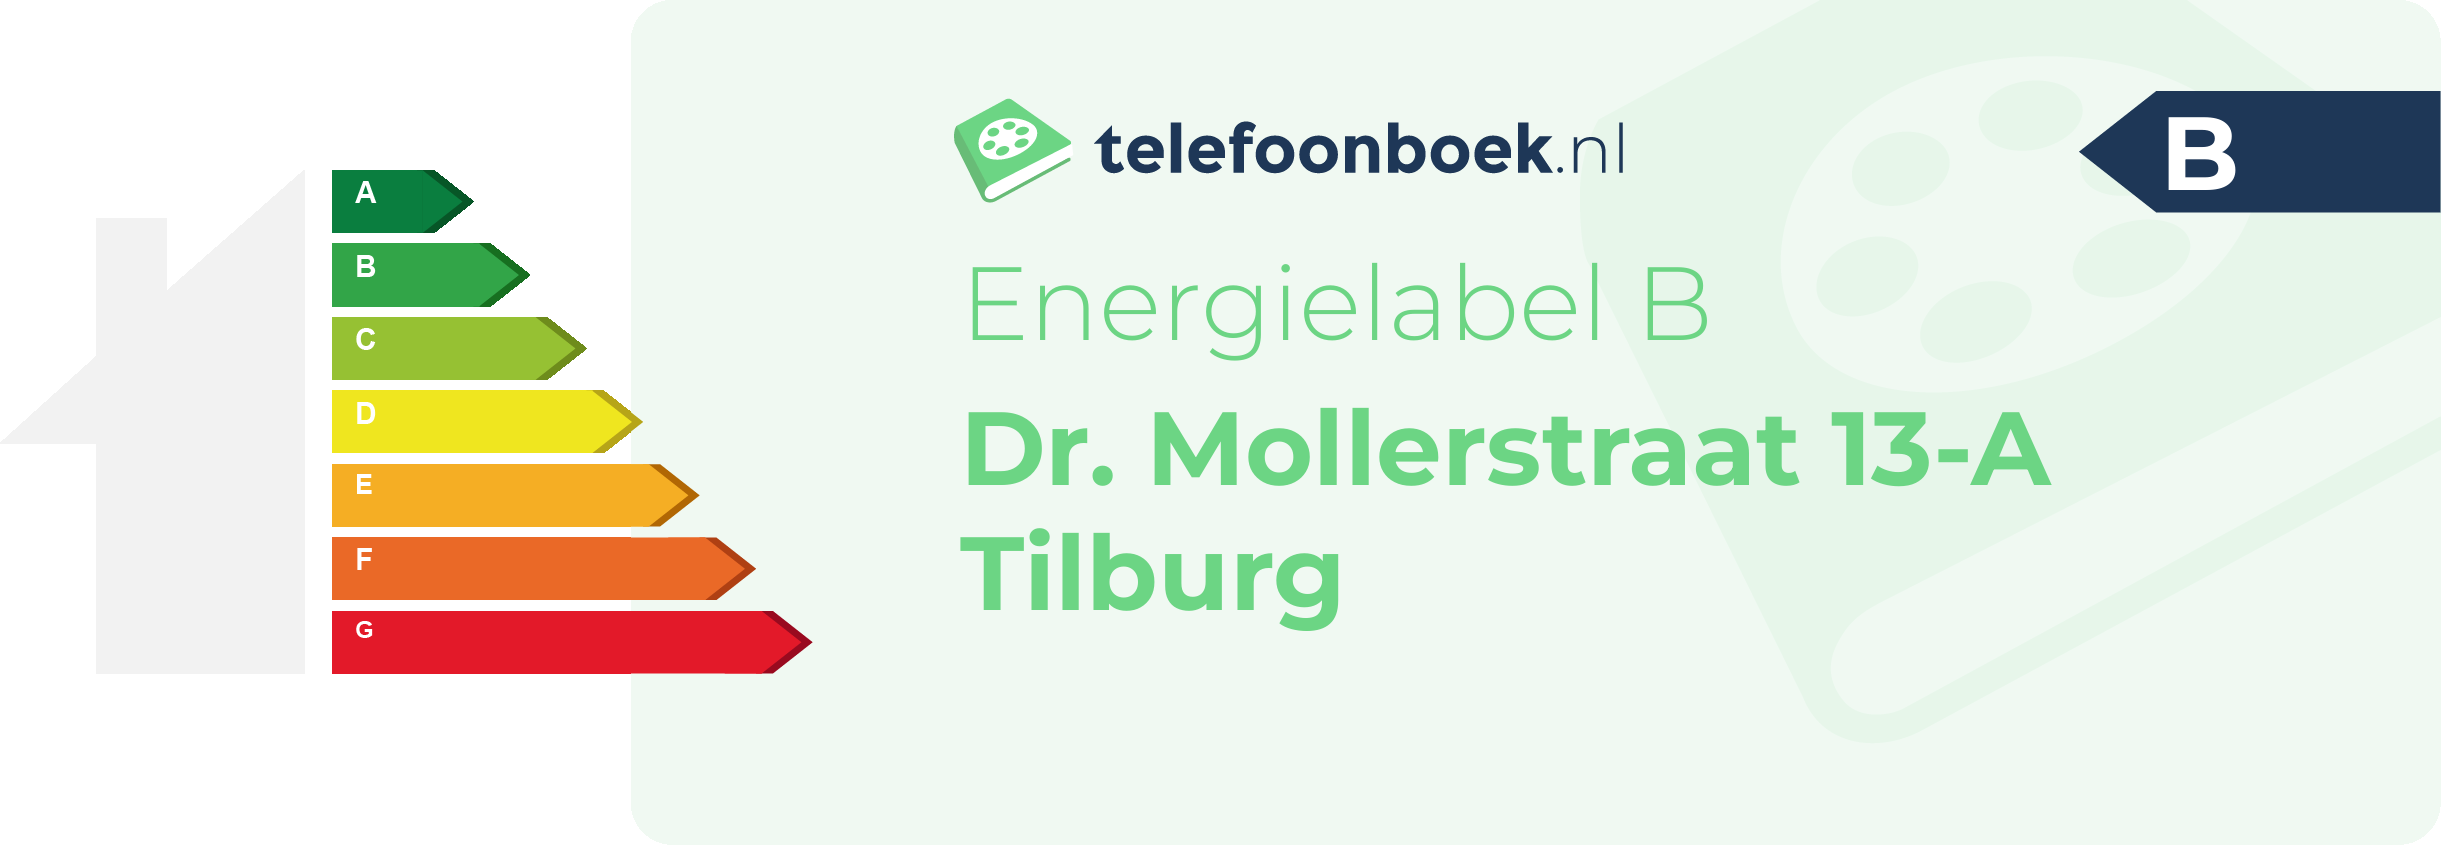 Energielabel Dr. Mollerstraat 13-A Tilburg